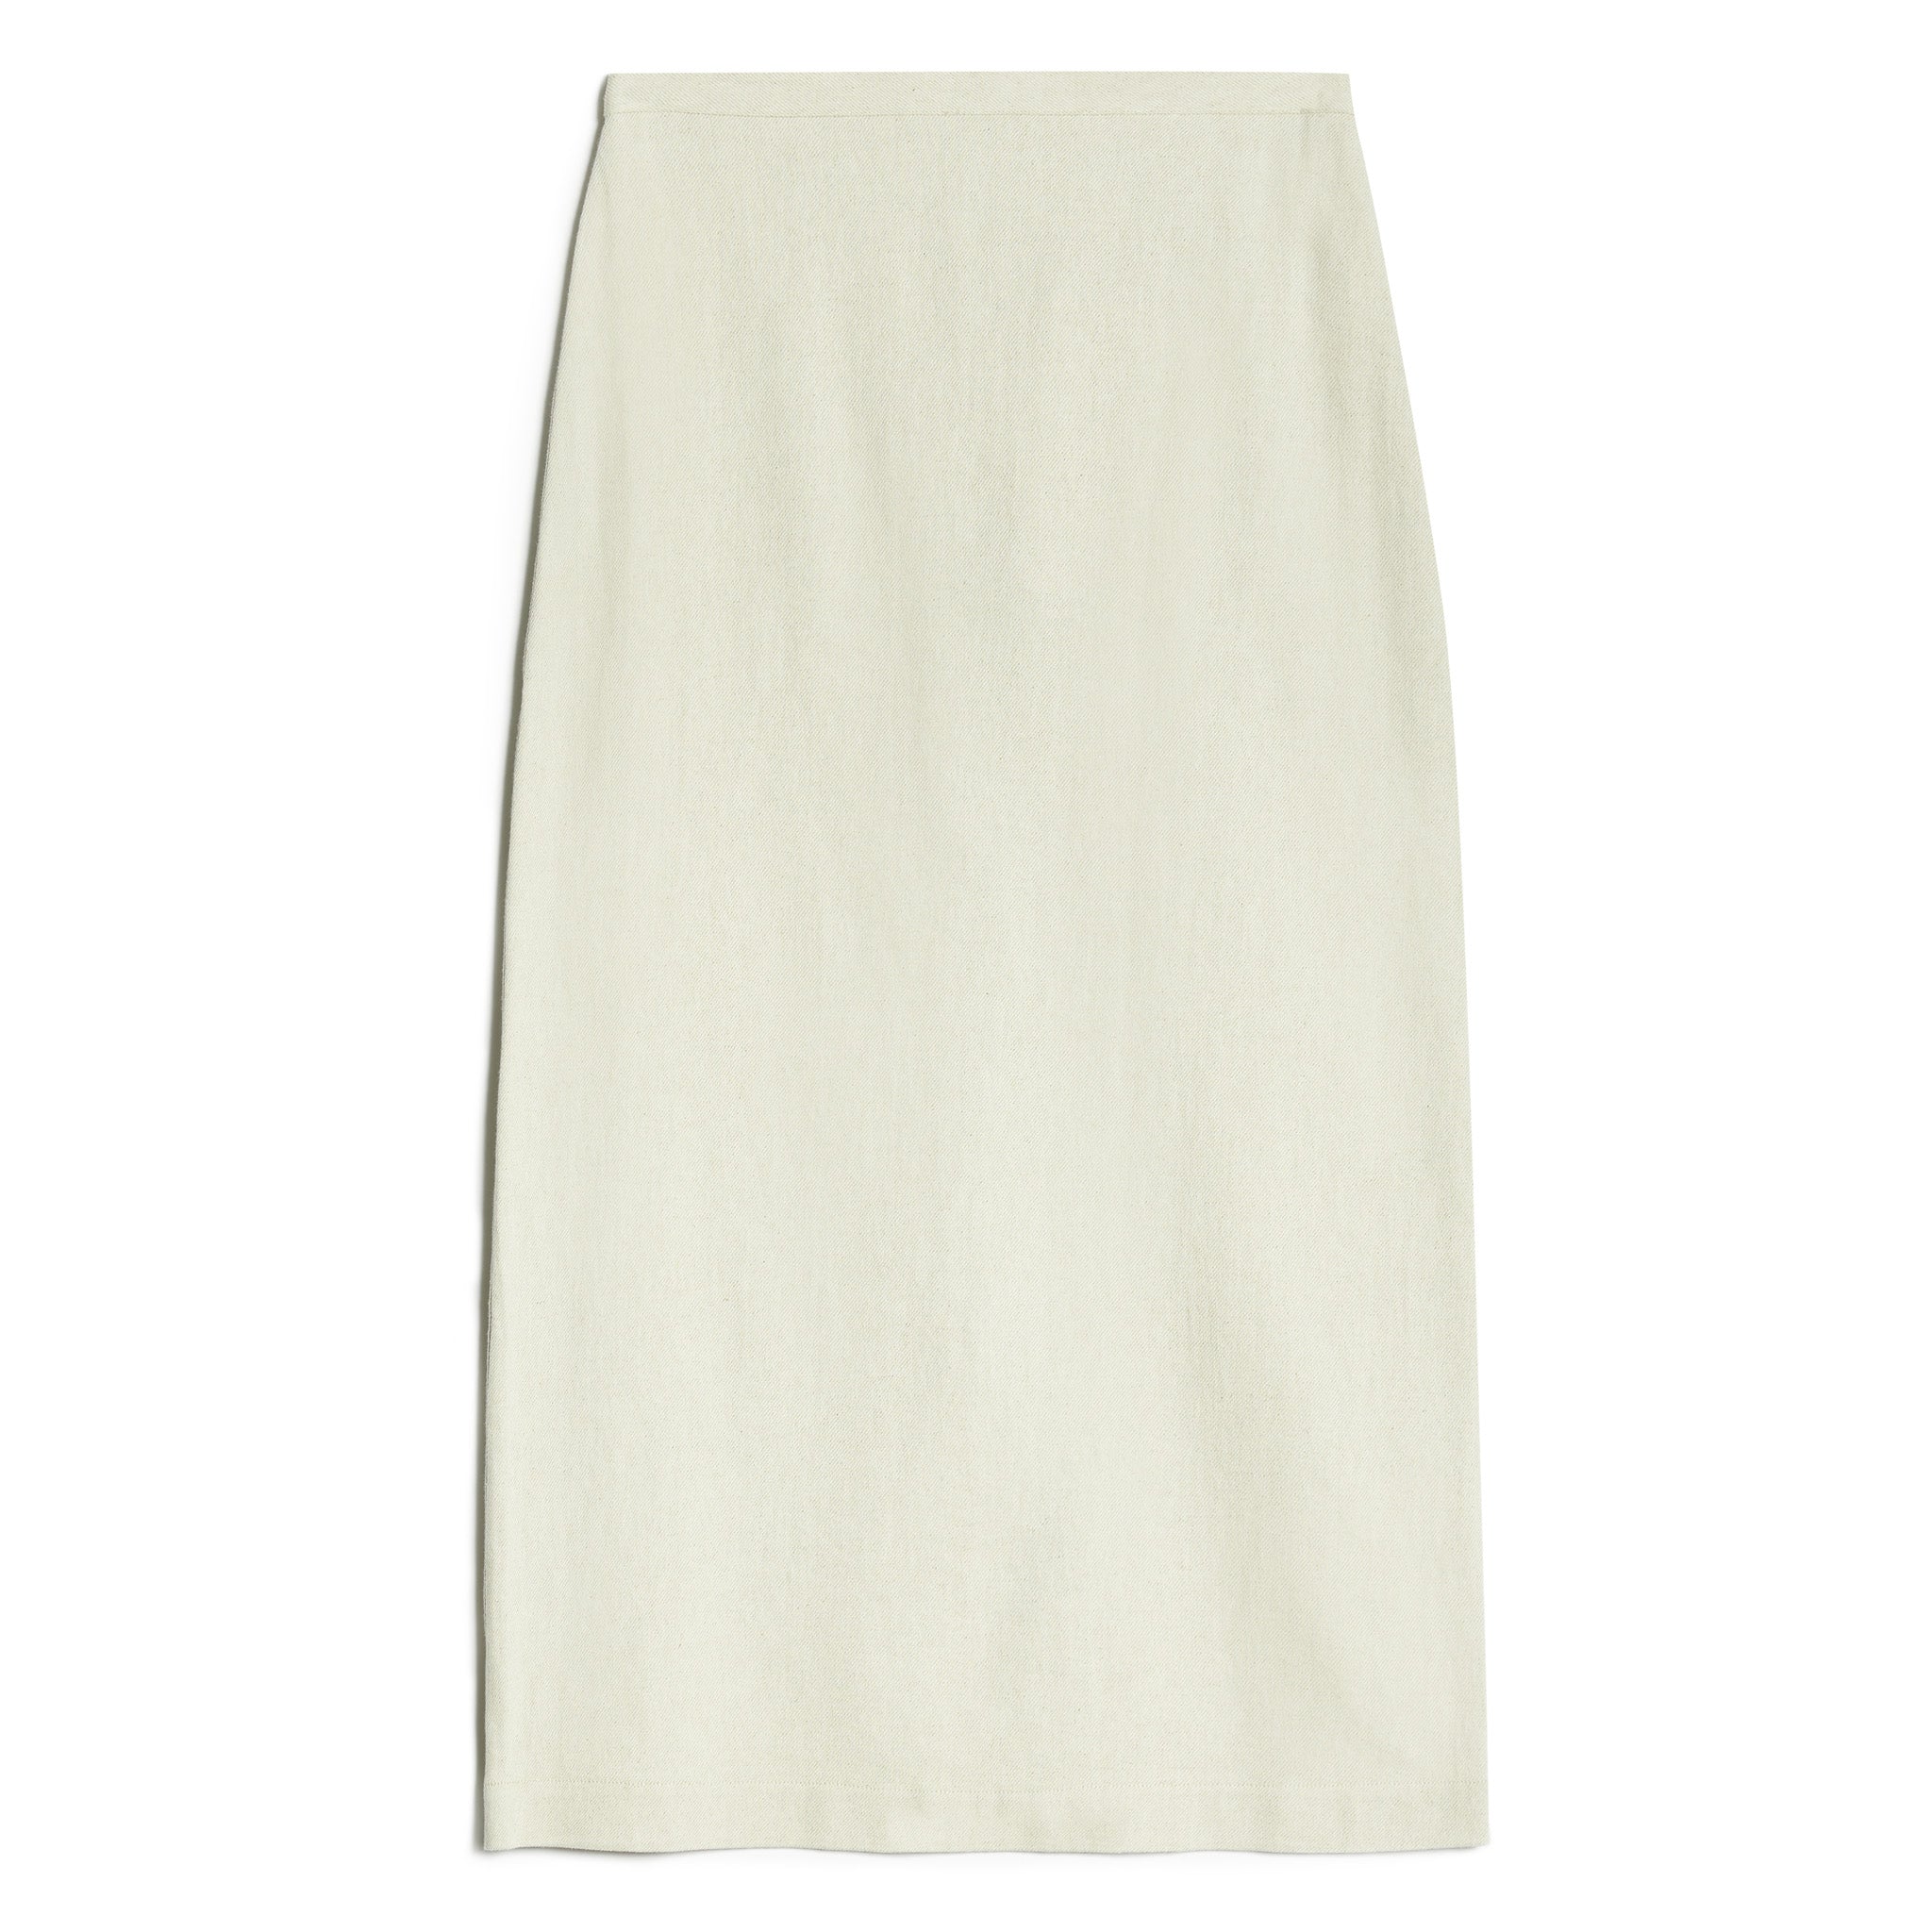 Linen Twill Pencil Skirt